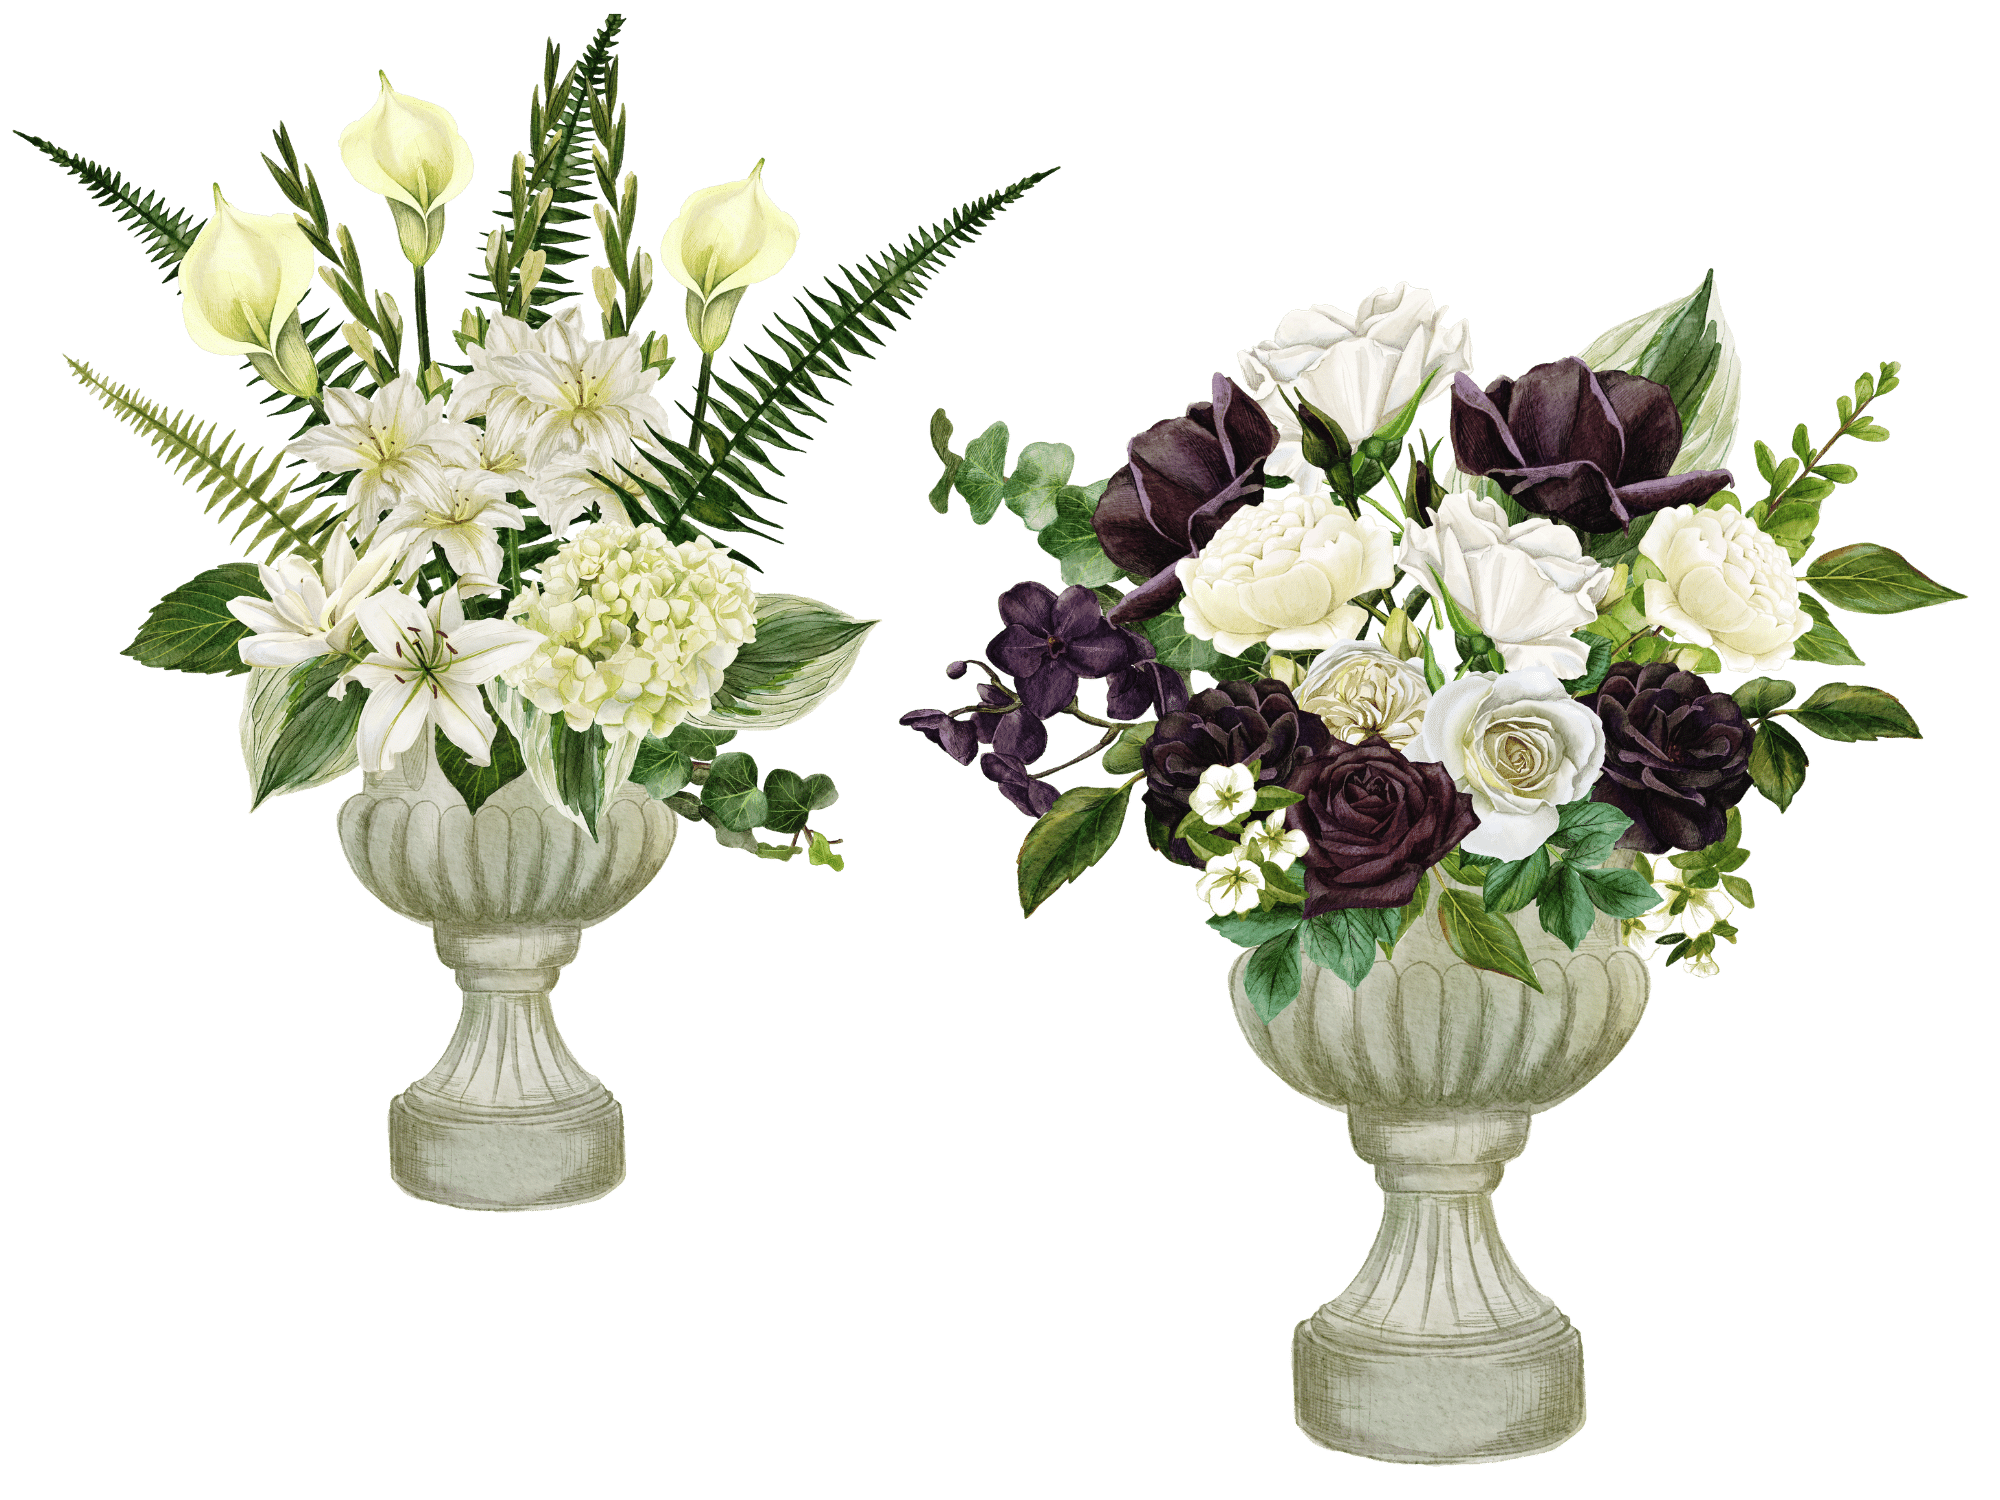 Broulim’s Floral Funeral Arrangement Descriptions